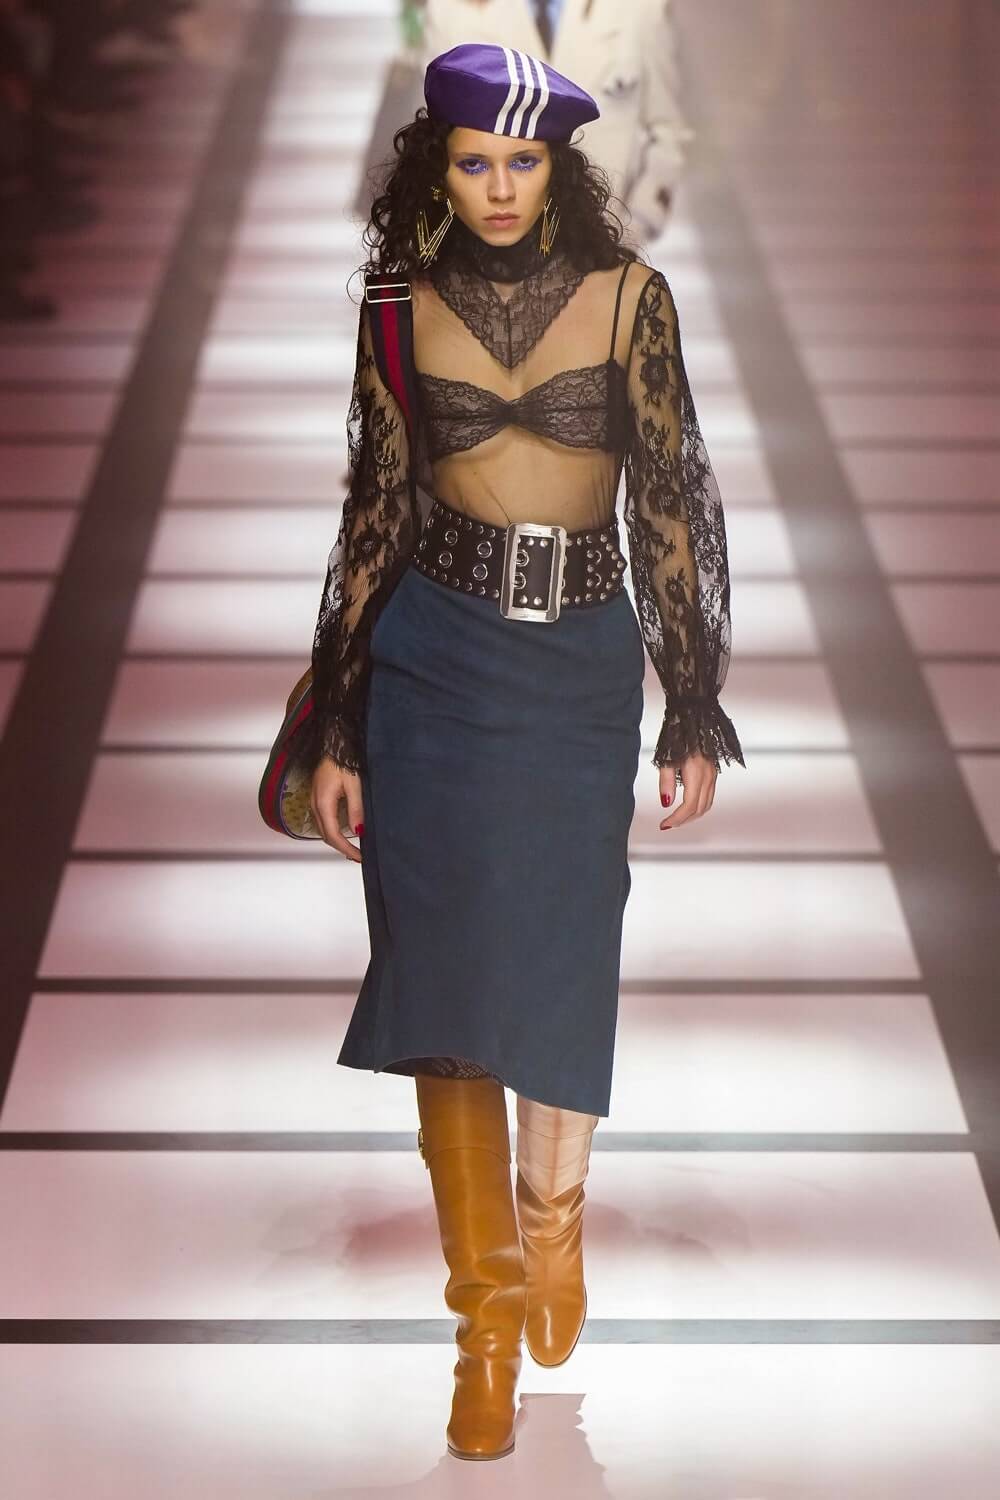 Gucci x Adidas Collaboration Debuts At Milan Fashion Week